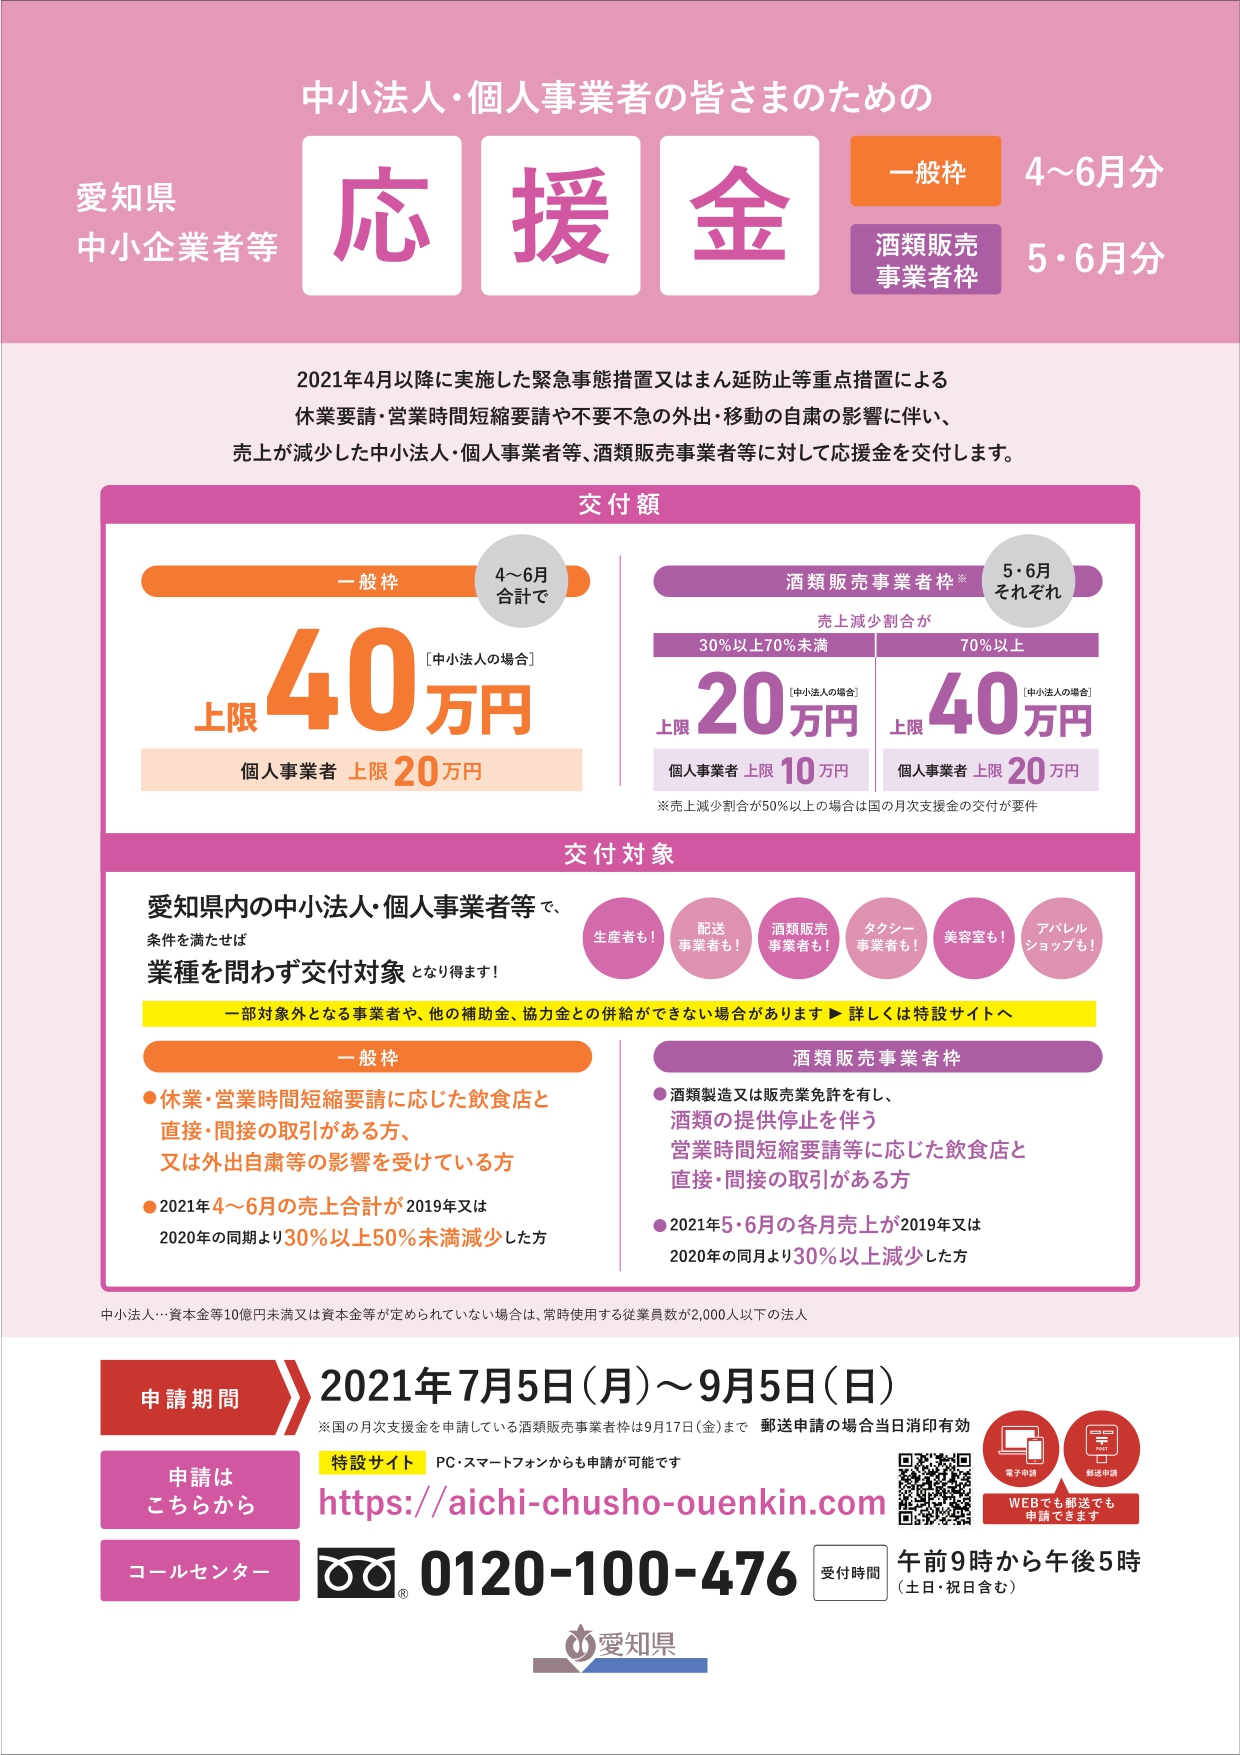 「愛知県中小企業者等応援金」の申請受付が開始されます